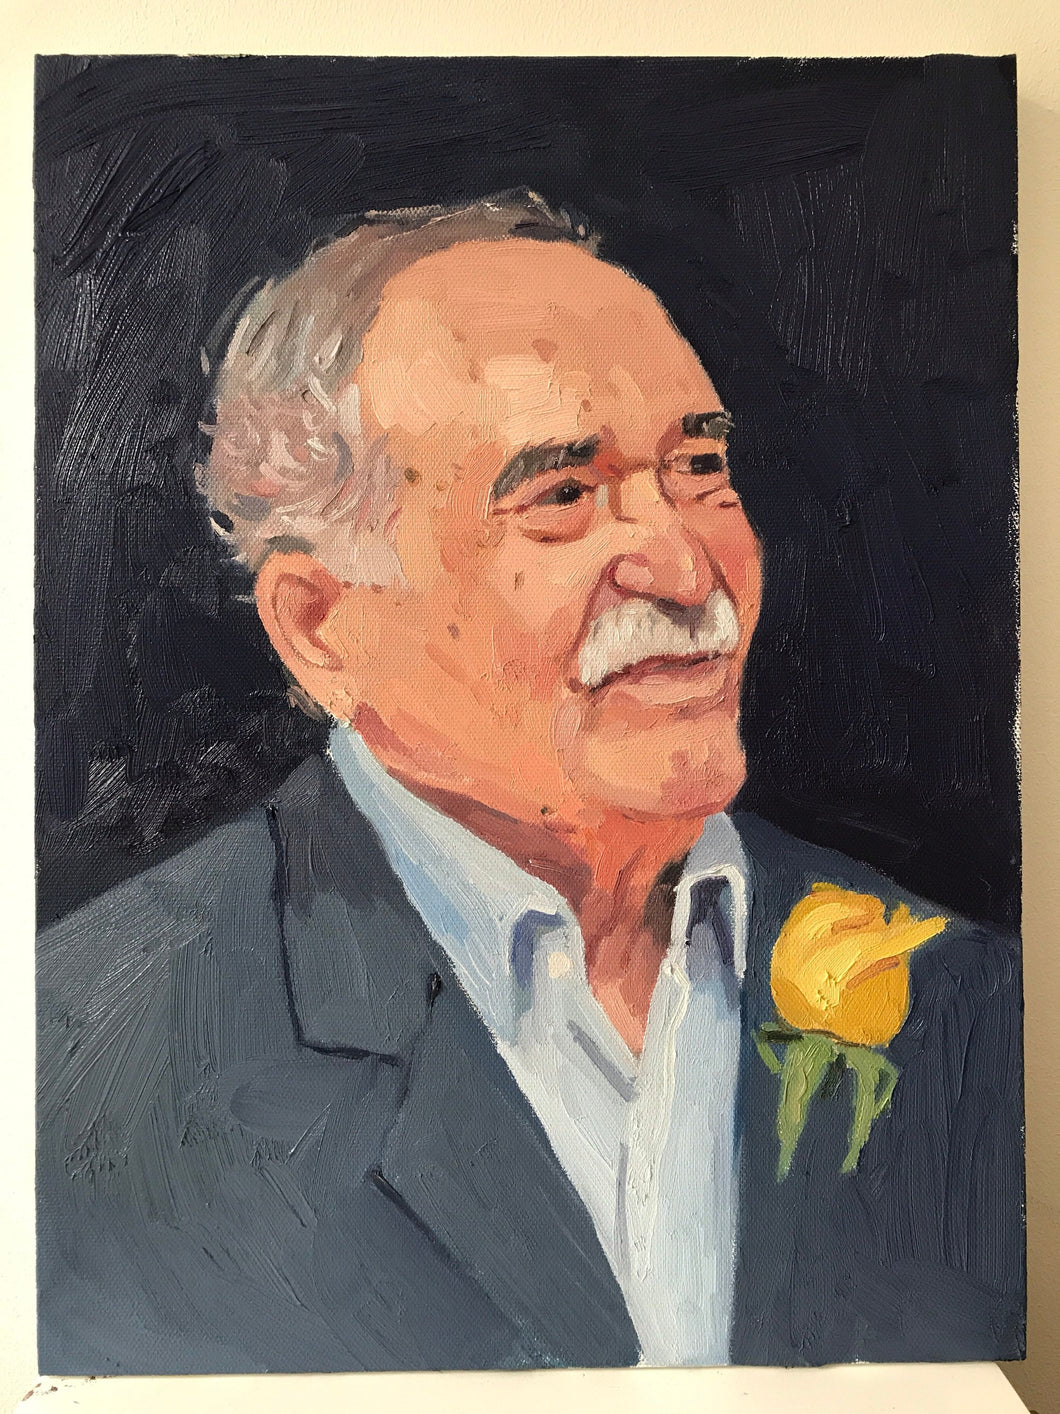 Portrait painting Gabriel Garcia Marquez original oil painting on canvas columbian author portraiture male portrait